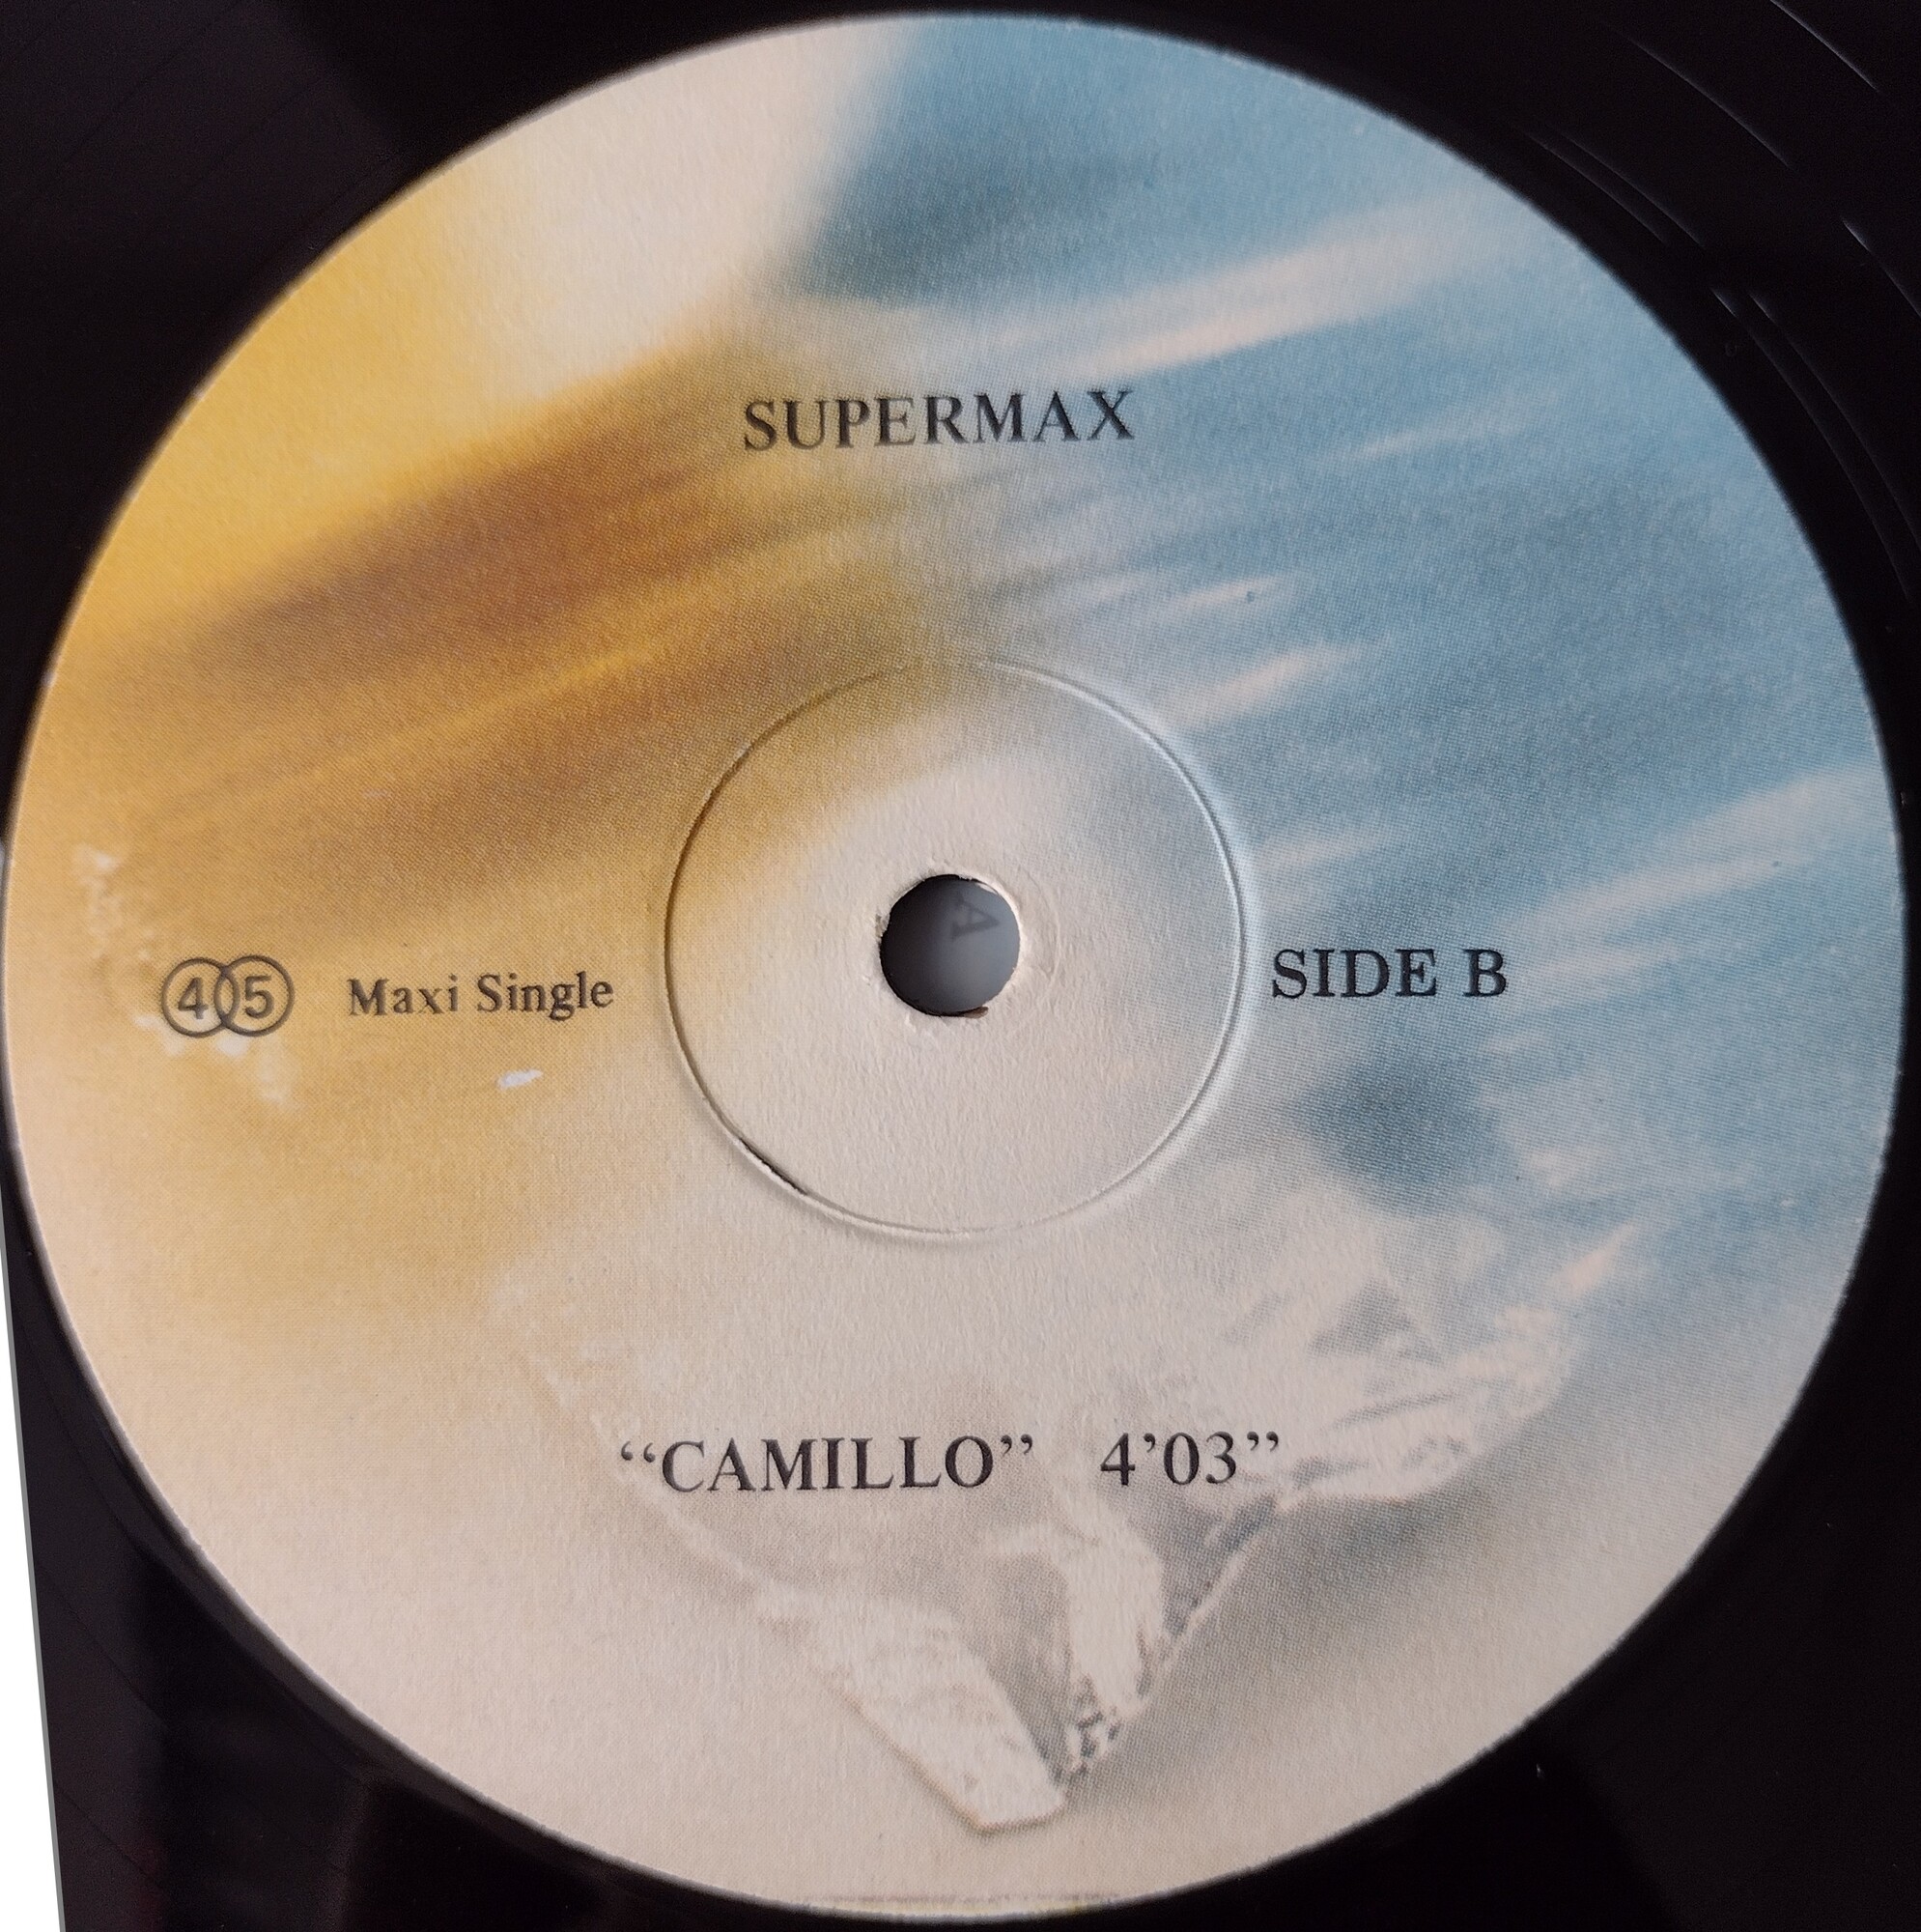 Supermax — It Ain't Easy / Supermax — Camillo